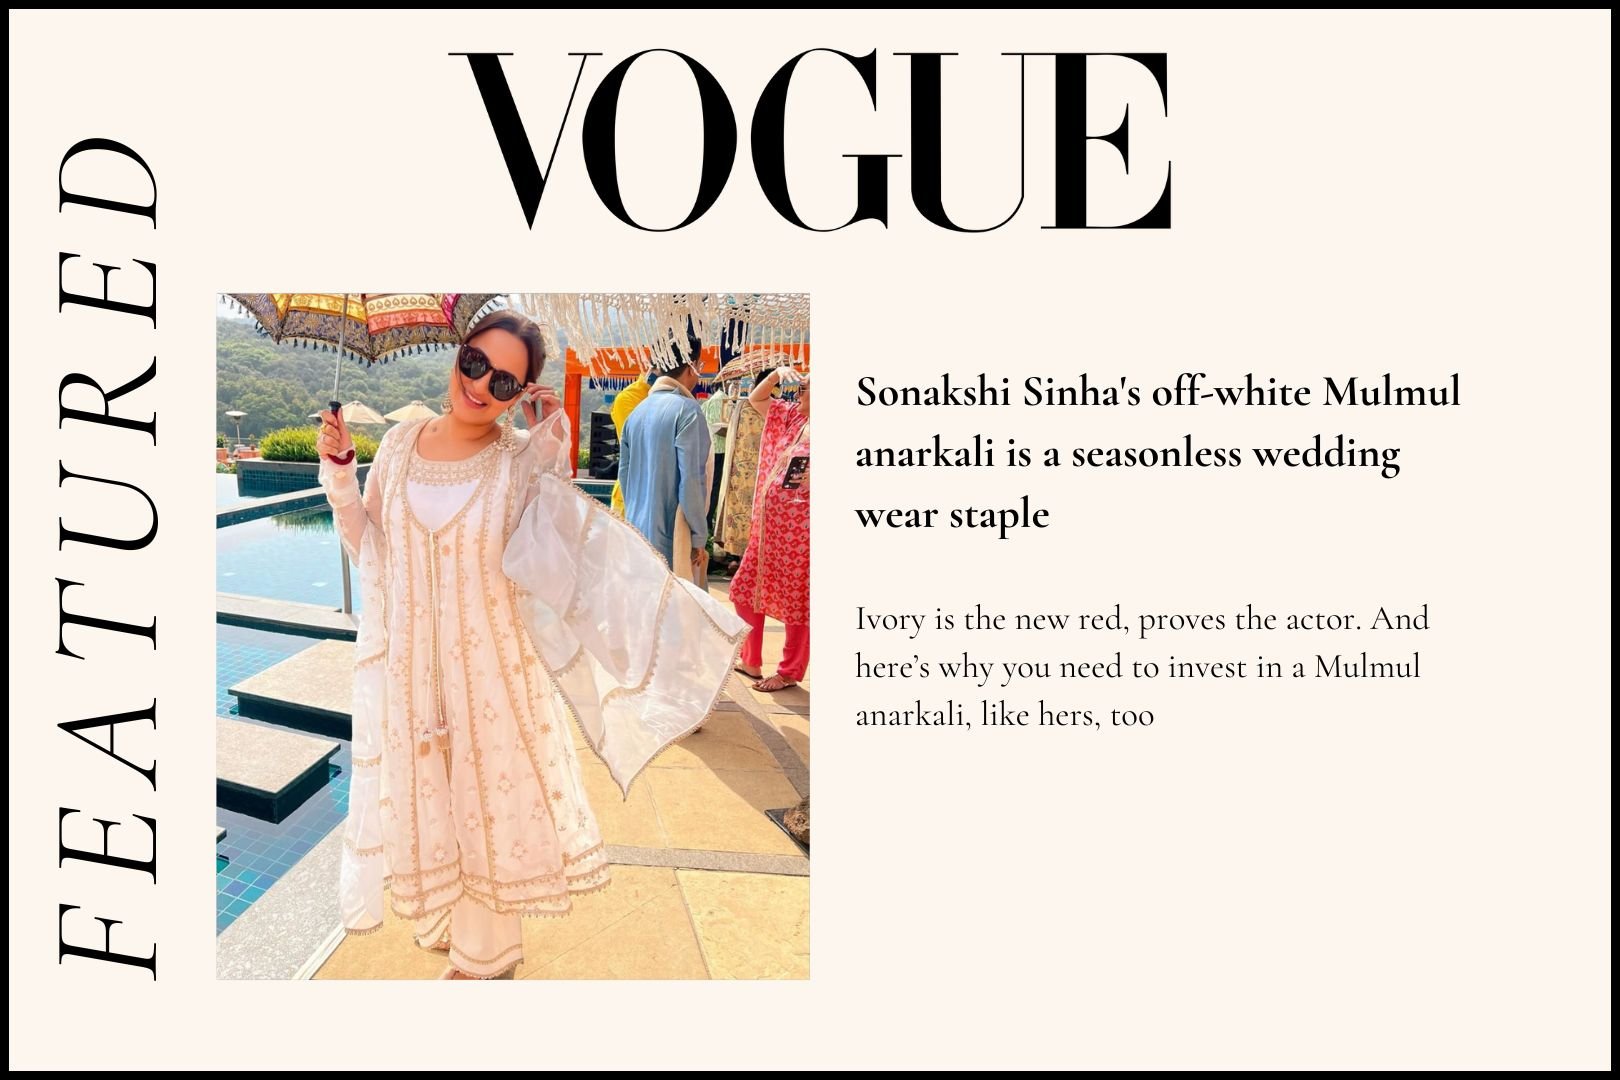 Sonakshi Sinha's off-white Mulmul anarkali is a seasonless wedding wear staple - Shop Mulmul